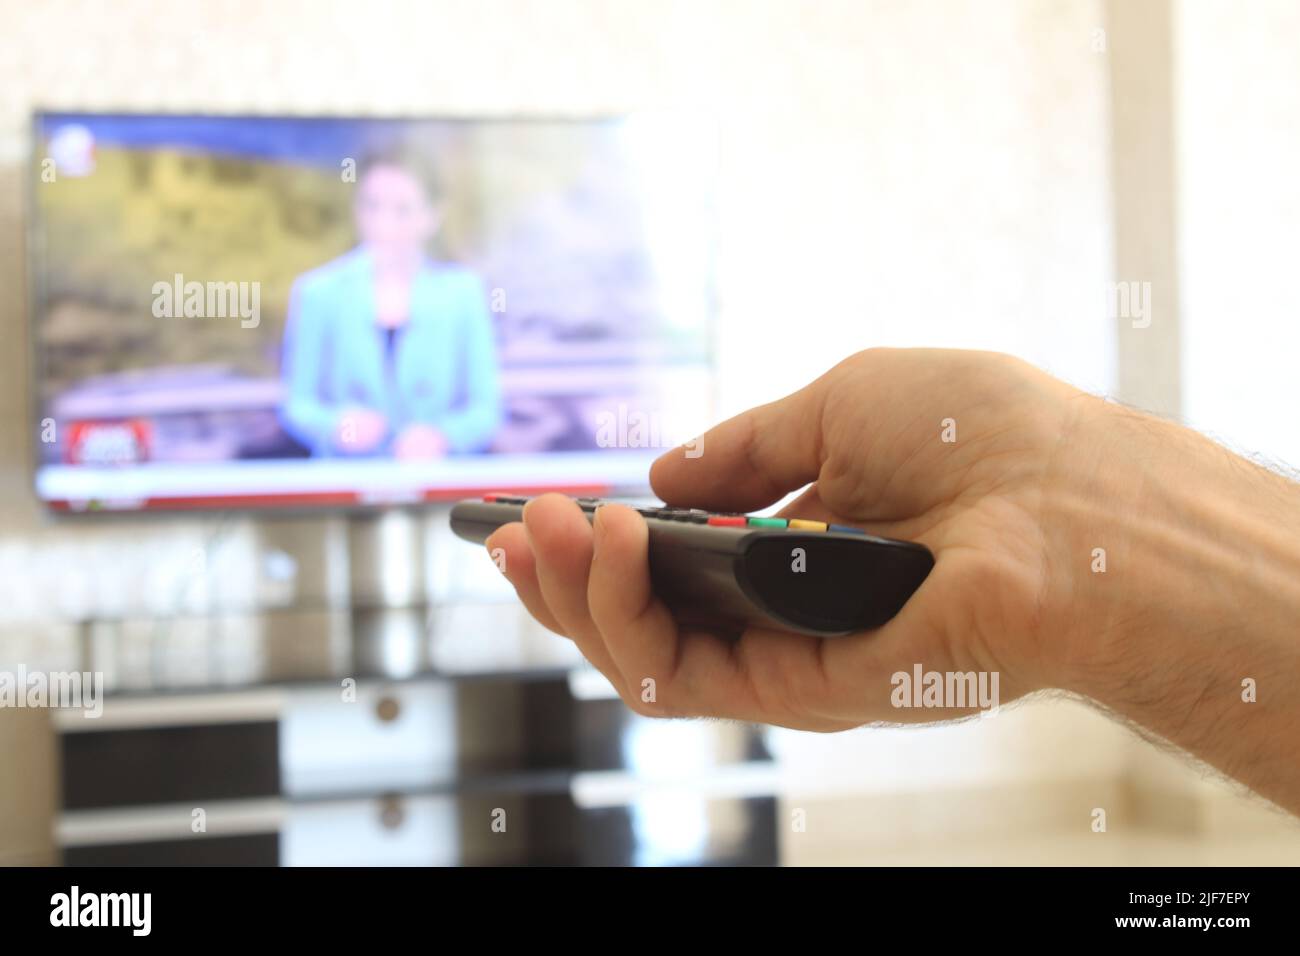 Fernbedienung, ein Mann mit einer Fernbedienung in der Hand schaltet die Sender auf dem fernseher. Stockfoto